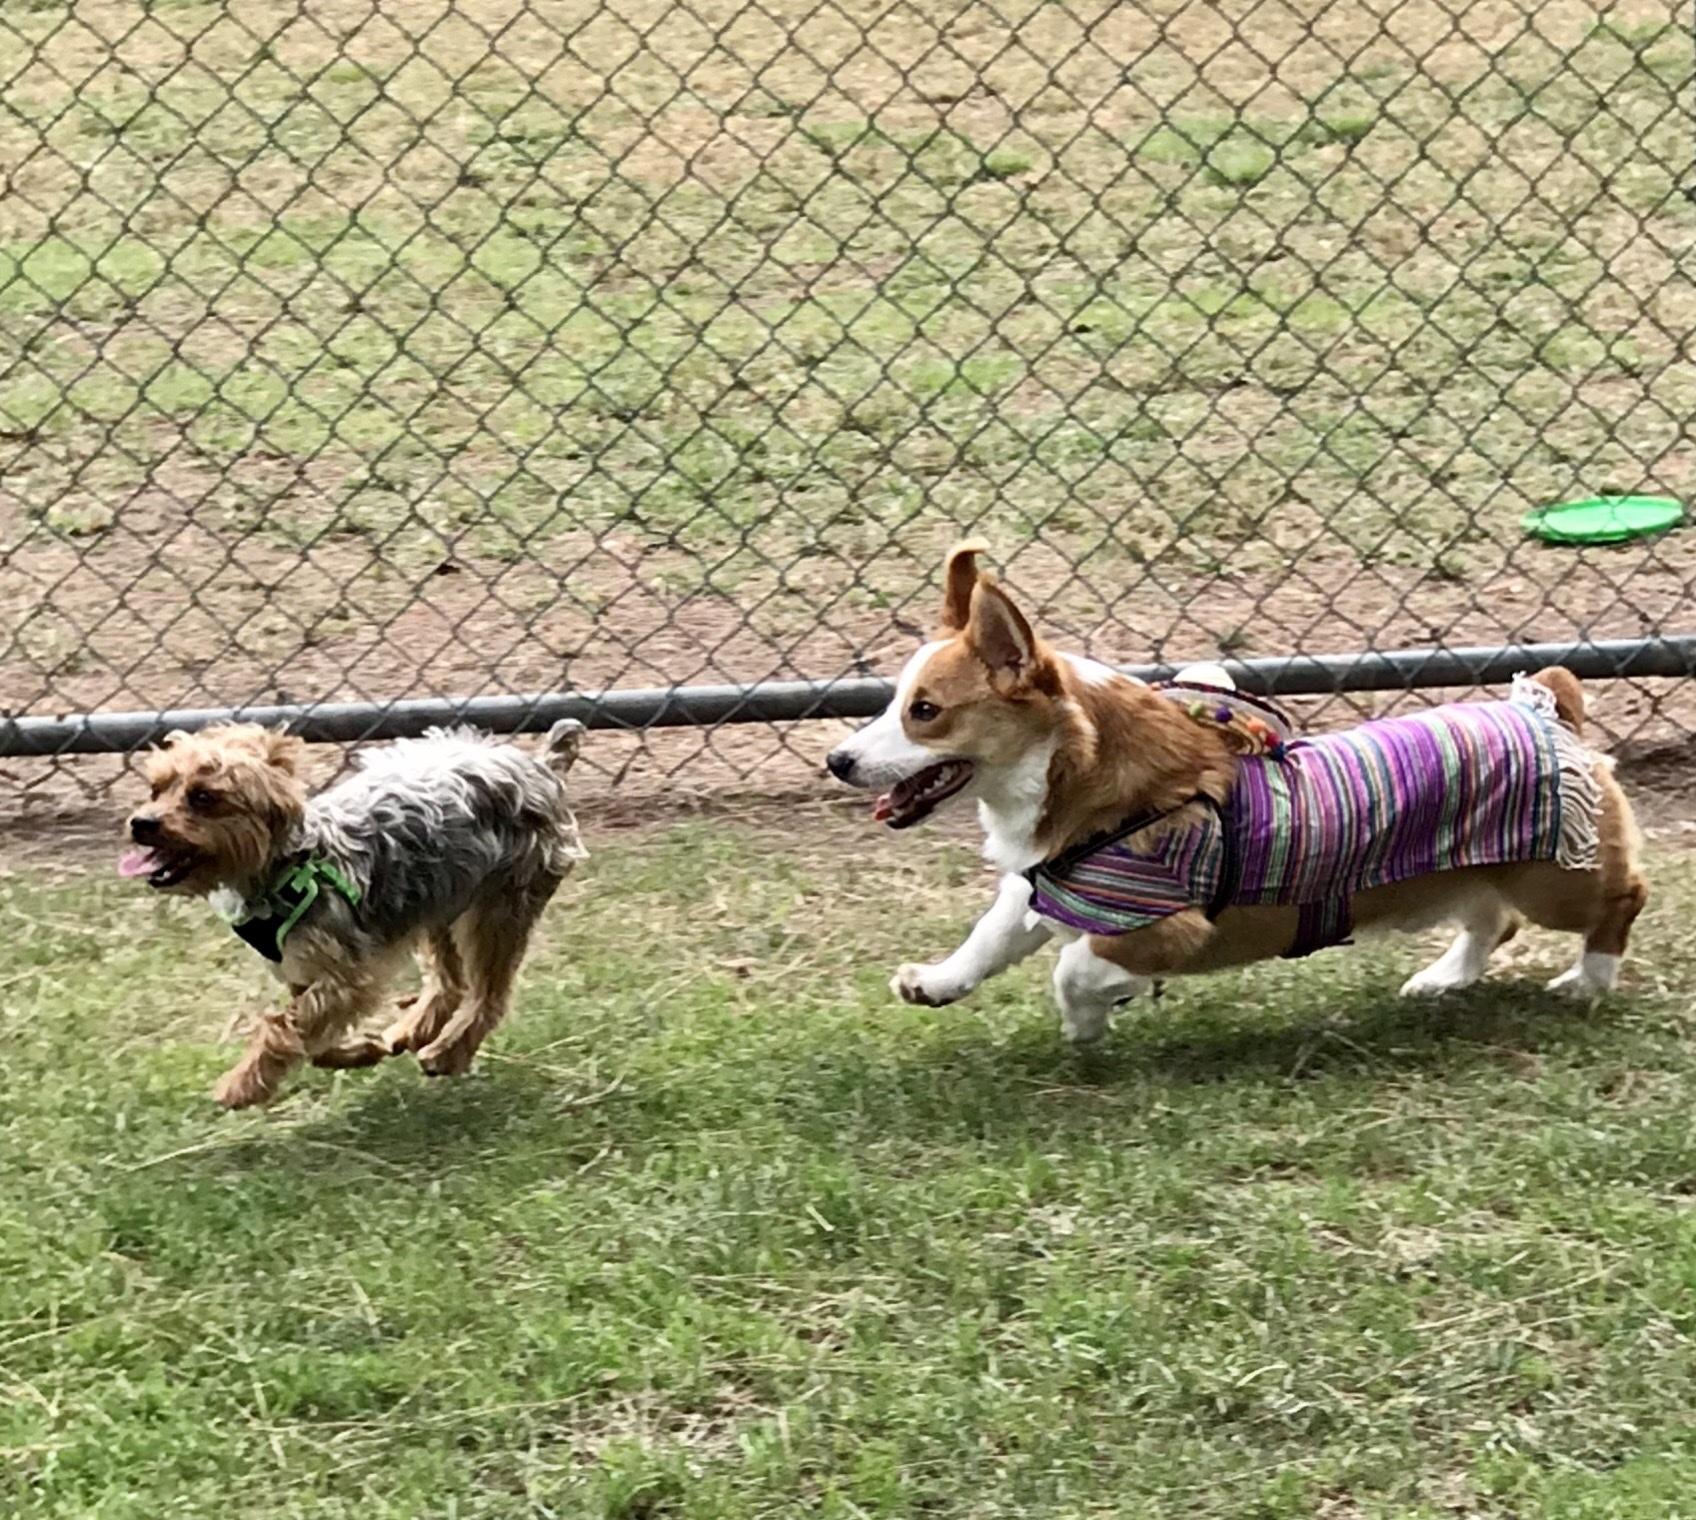 are dogs allowed at el dorado park